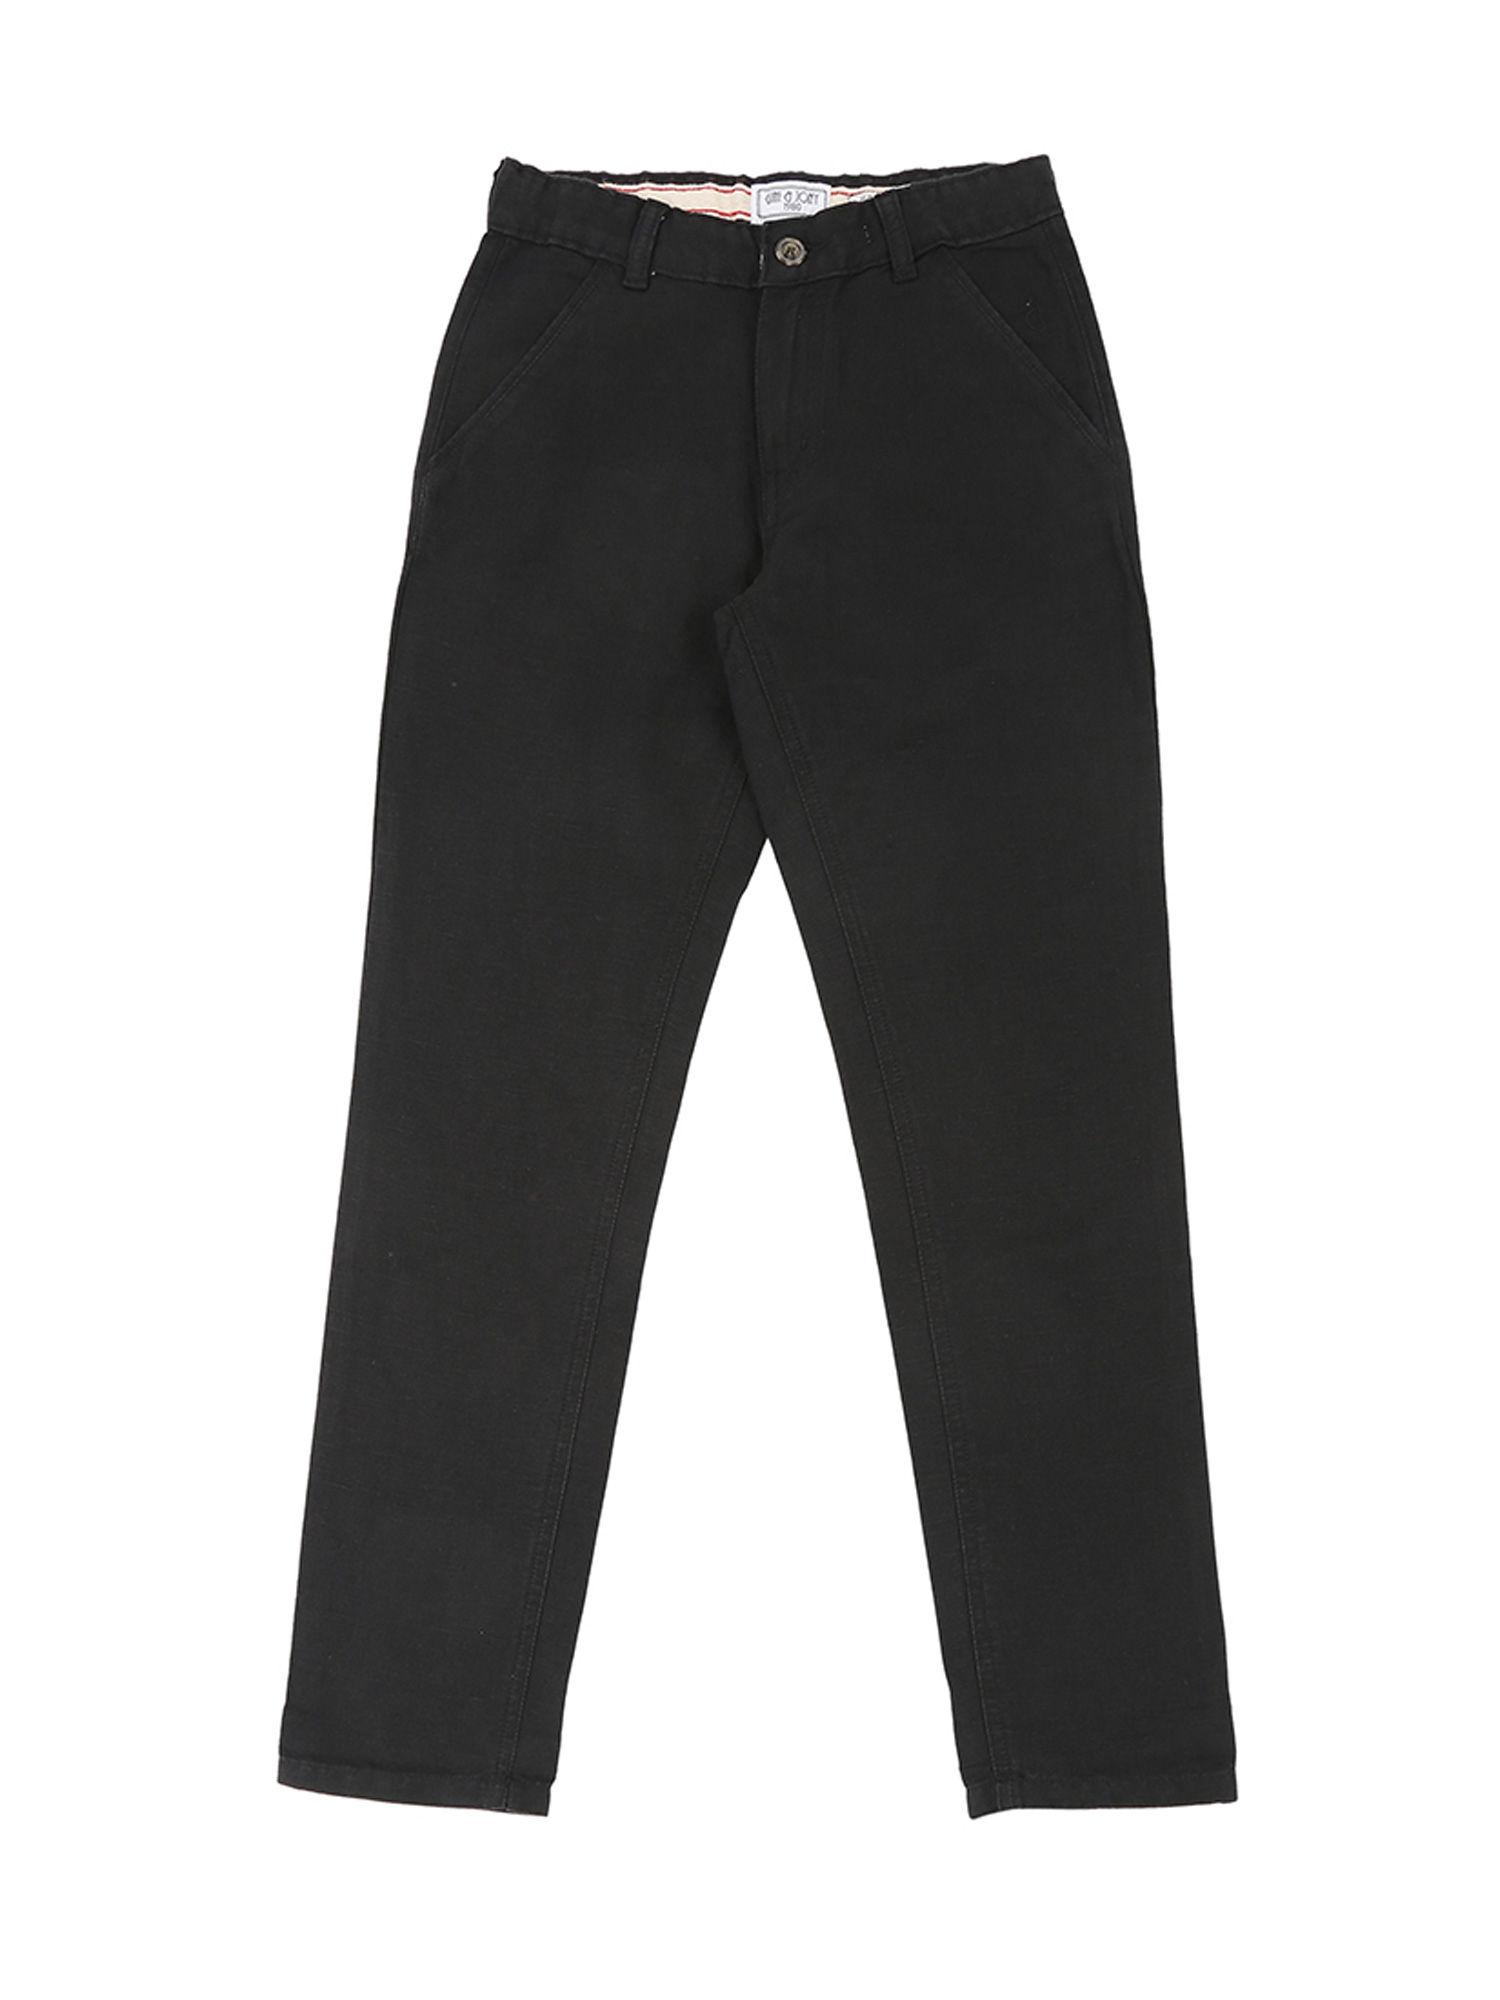 black cotton linen trouser